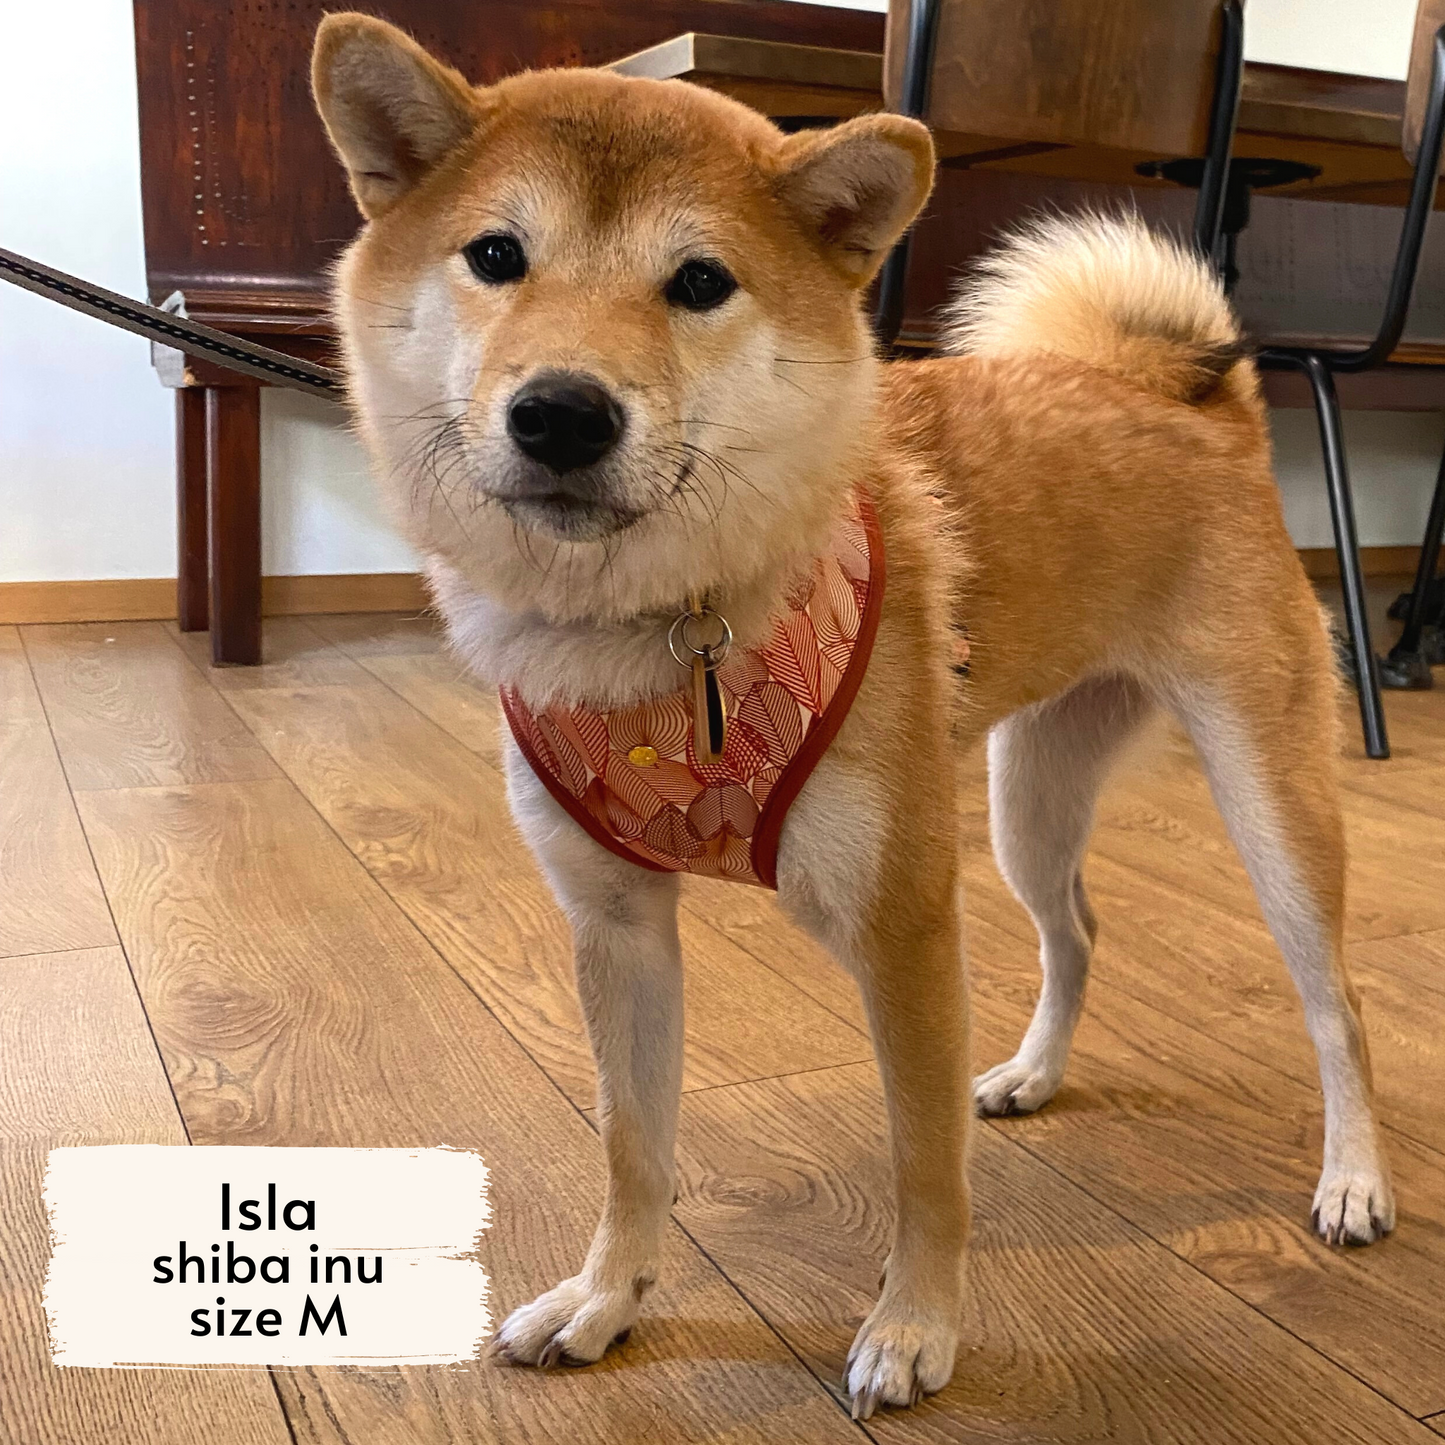 Autumn crunch harness worn by a medium-sized dog, Isla, a Shiba Inu